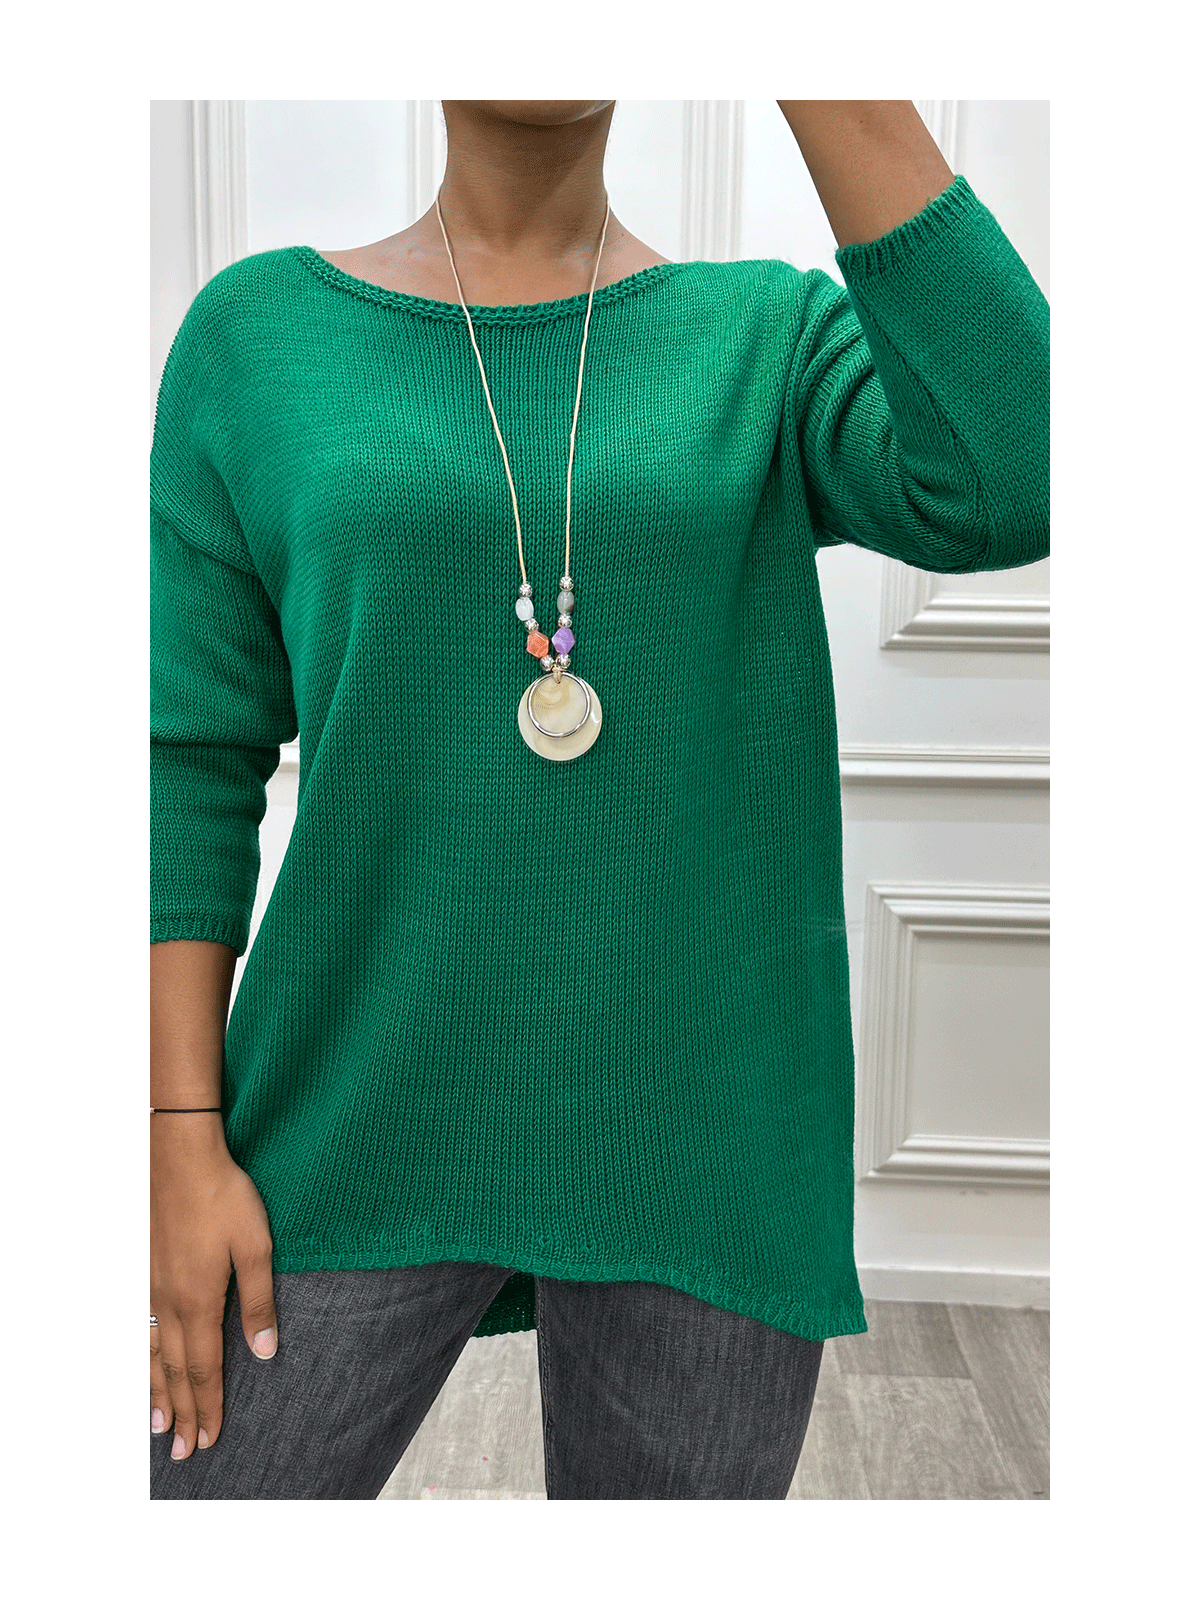 Robe pull vert avec collier - 2